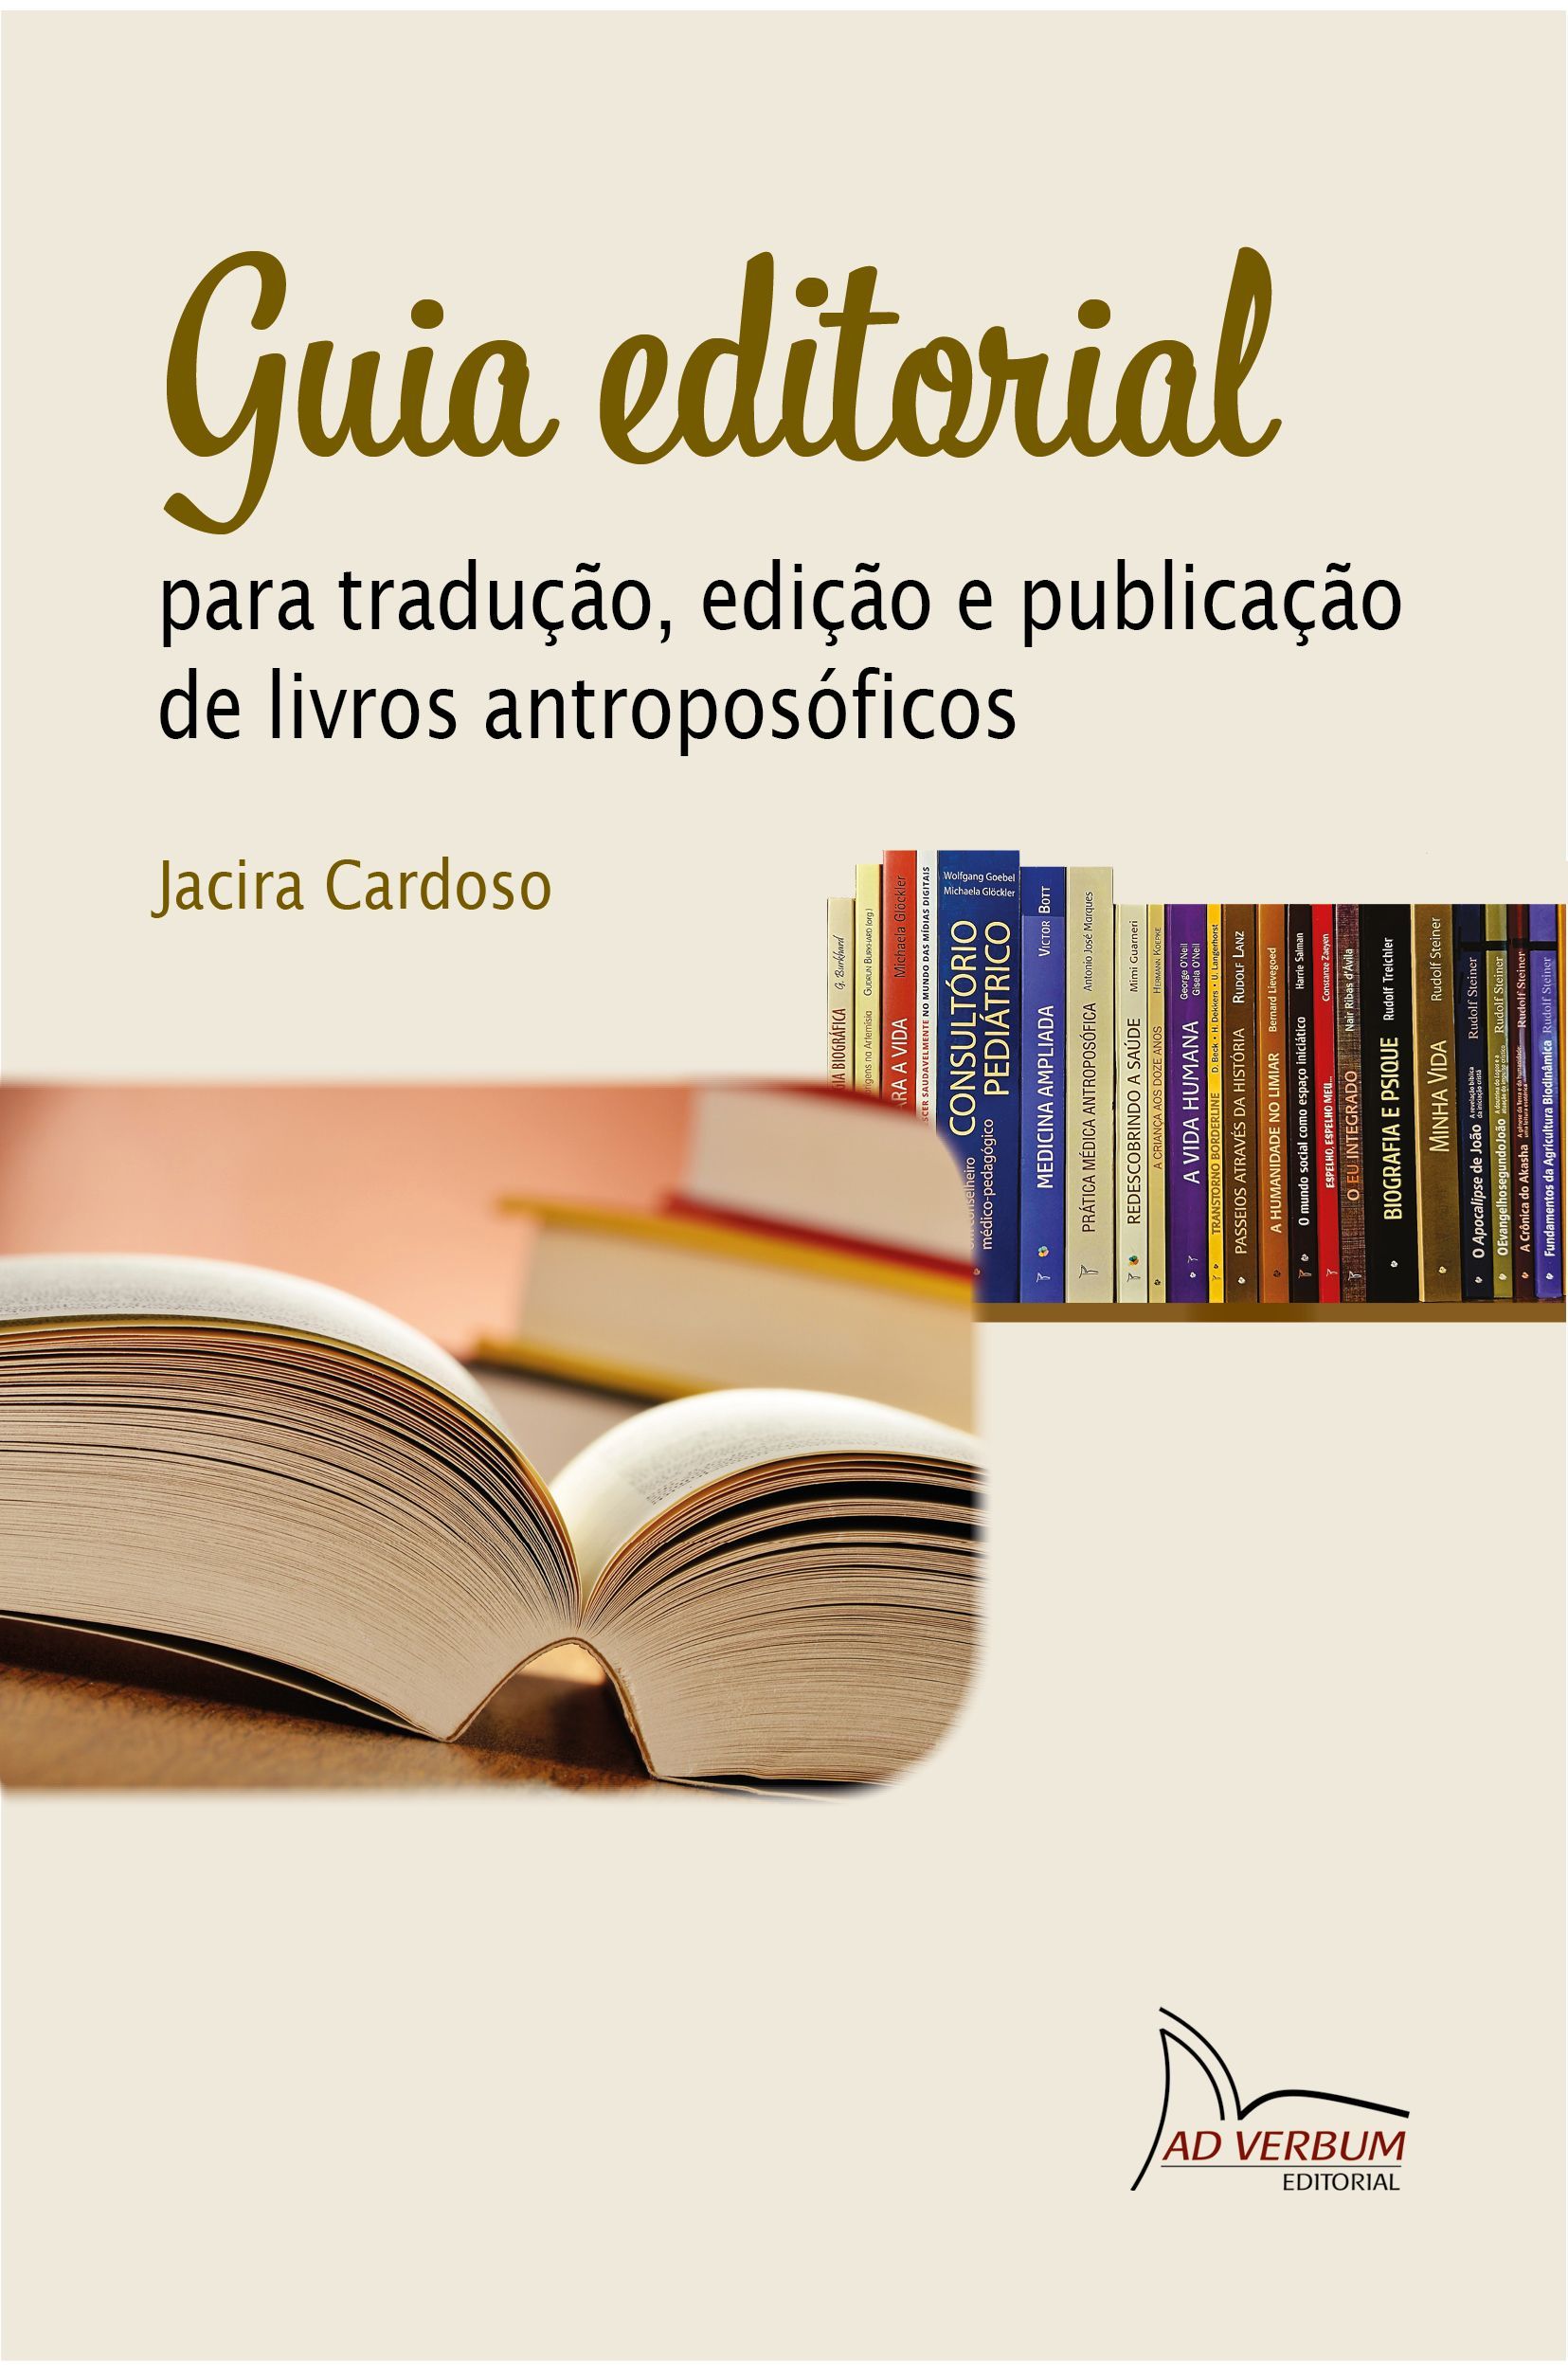 GUIA EDITORIAL para tradução, edição e publicação de livros antroposóficos - Jacira Cardoso